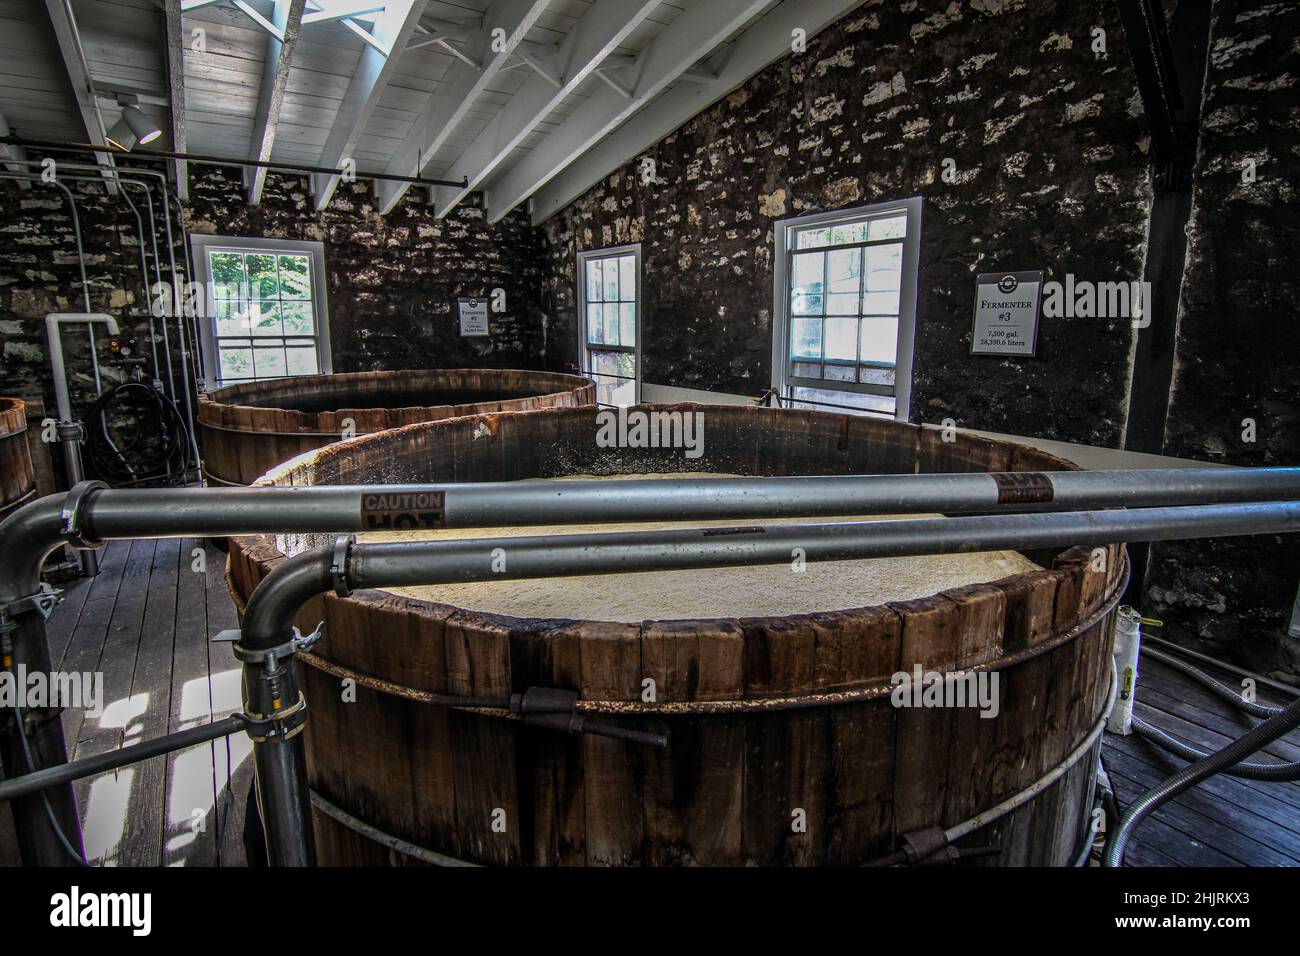 Observez le bourbon dans ces vieux fermenteurs en bois du Kentucky. Banque D'Images